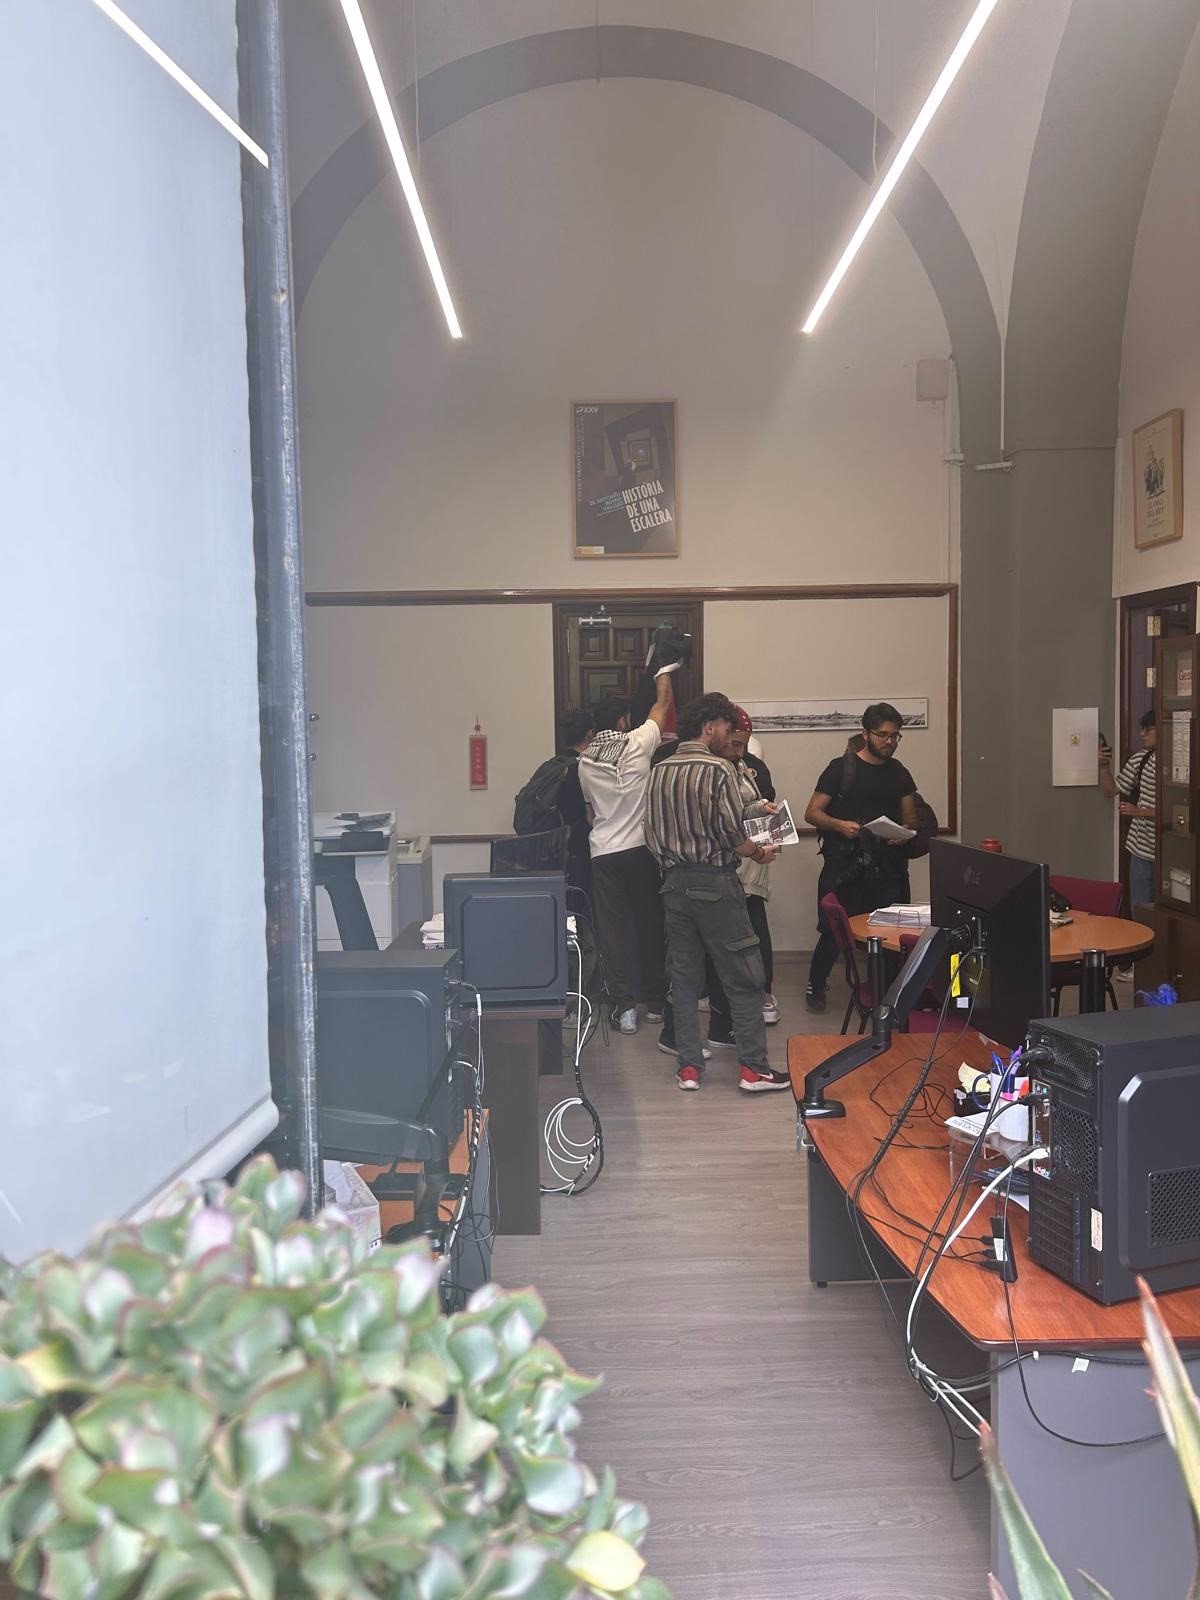 La policía libera la detención de estudiantes pro-Gaza en el decanato de filología de la Universidad de Sevilla.